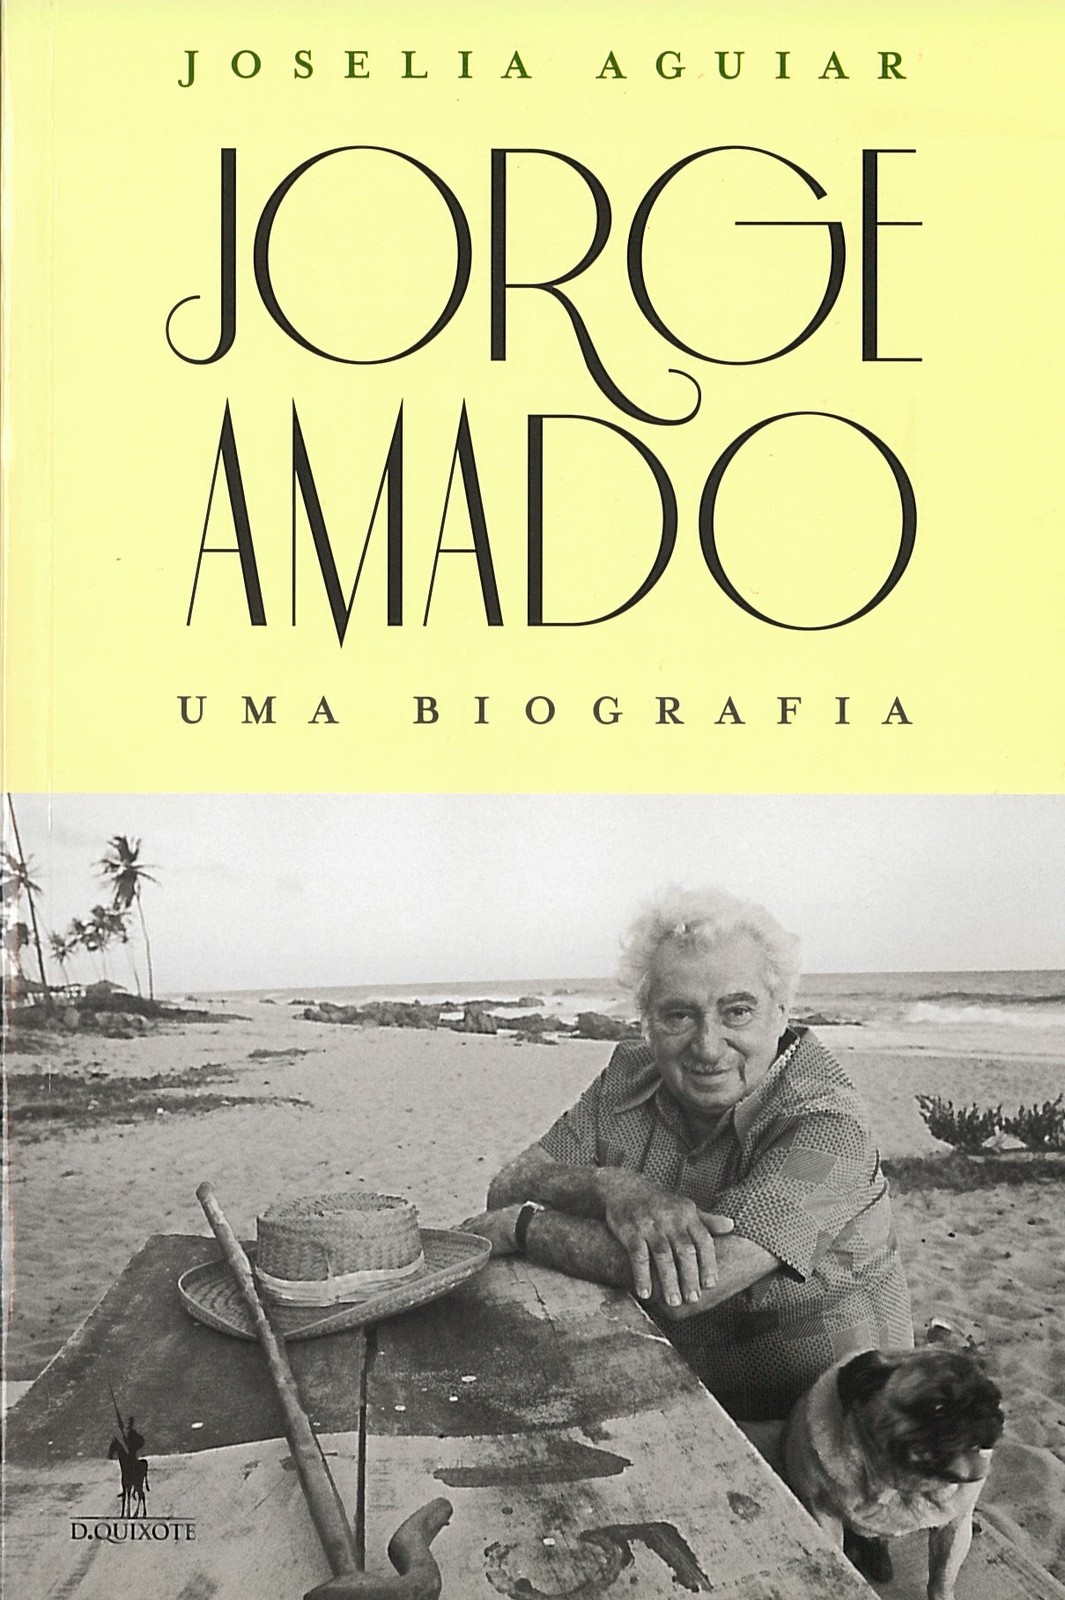 Joselia Aguiar - Jorge Amado, uma biografia